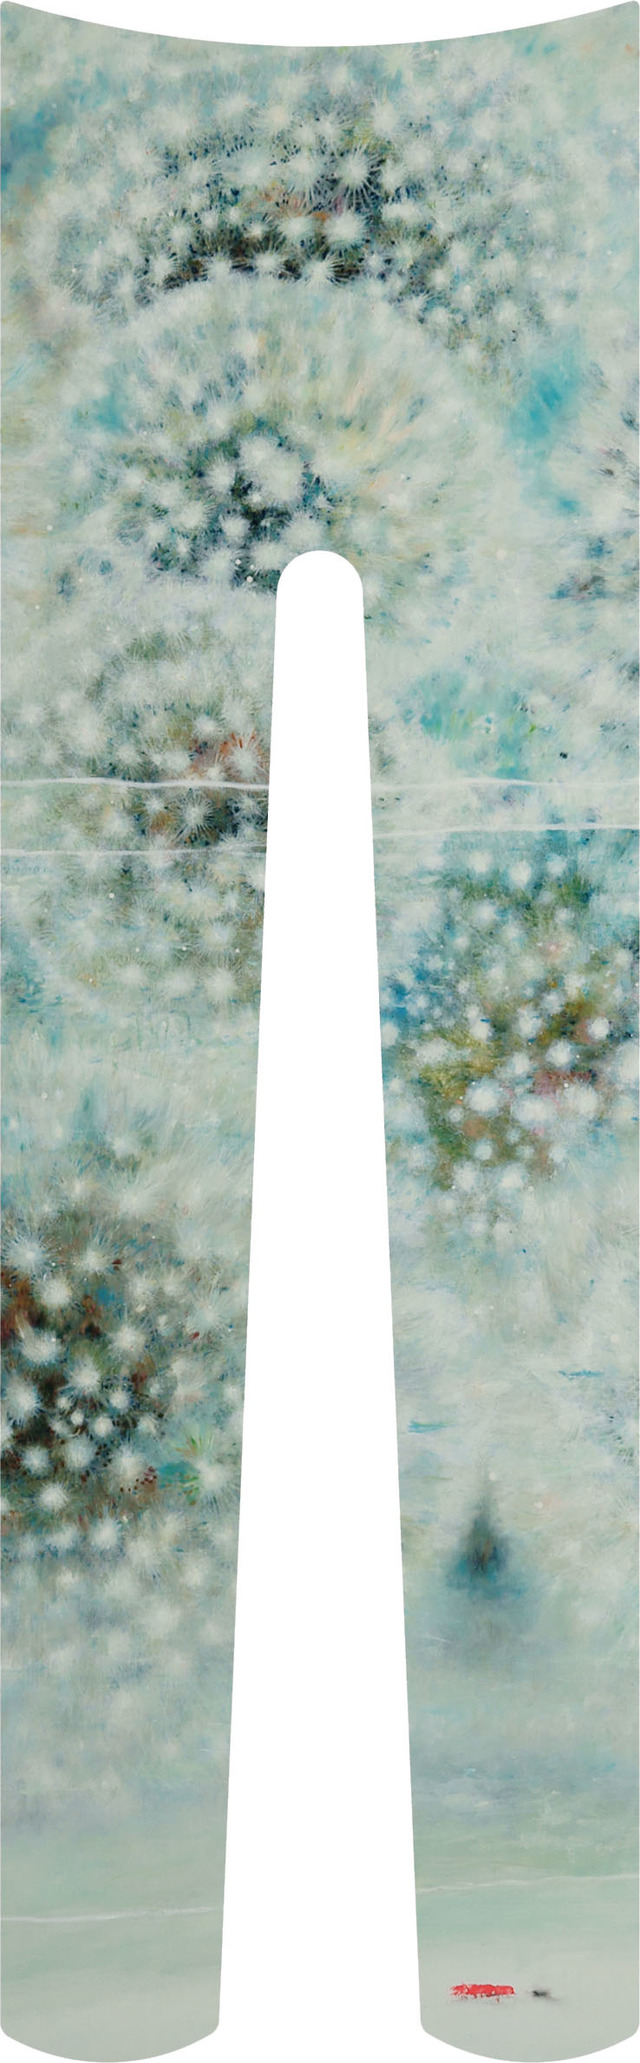 画家の池平徹兵とペインティングアーティストの田中紗樹による「ワンピースとタイツ」の新作タイツ